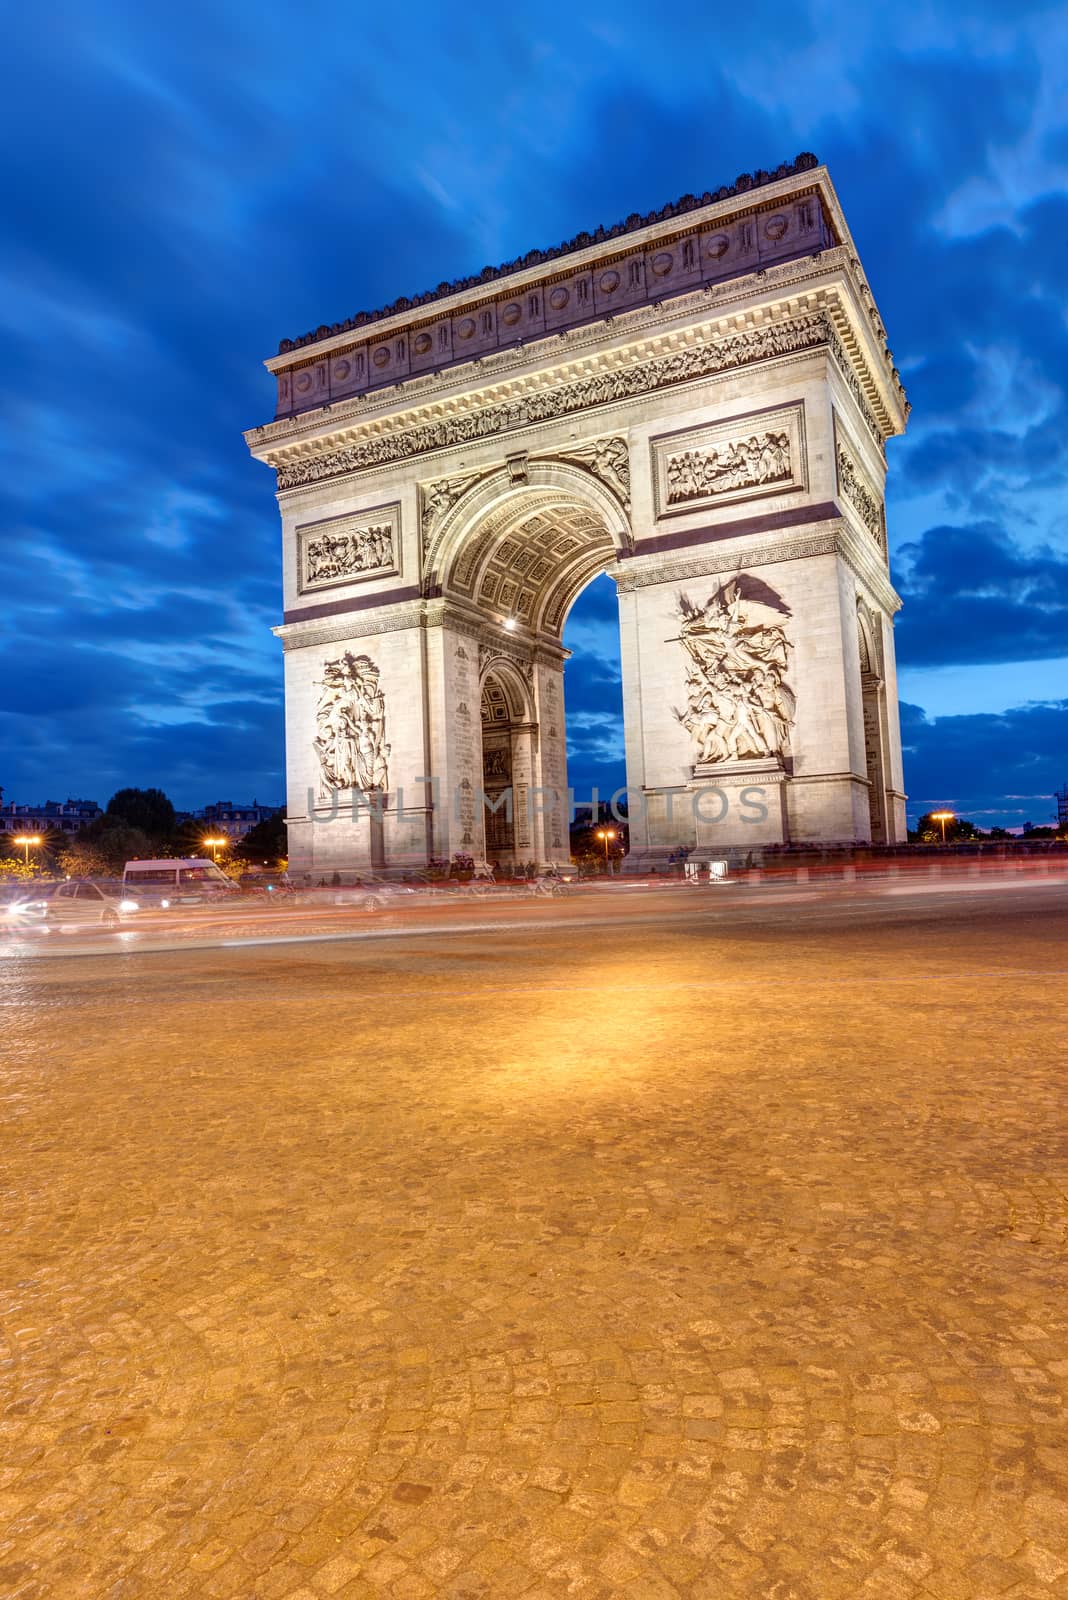 The Arc de Triomphe in Paris by elxeneize